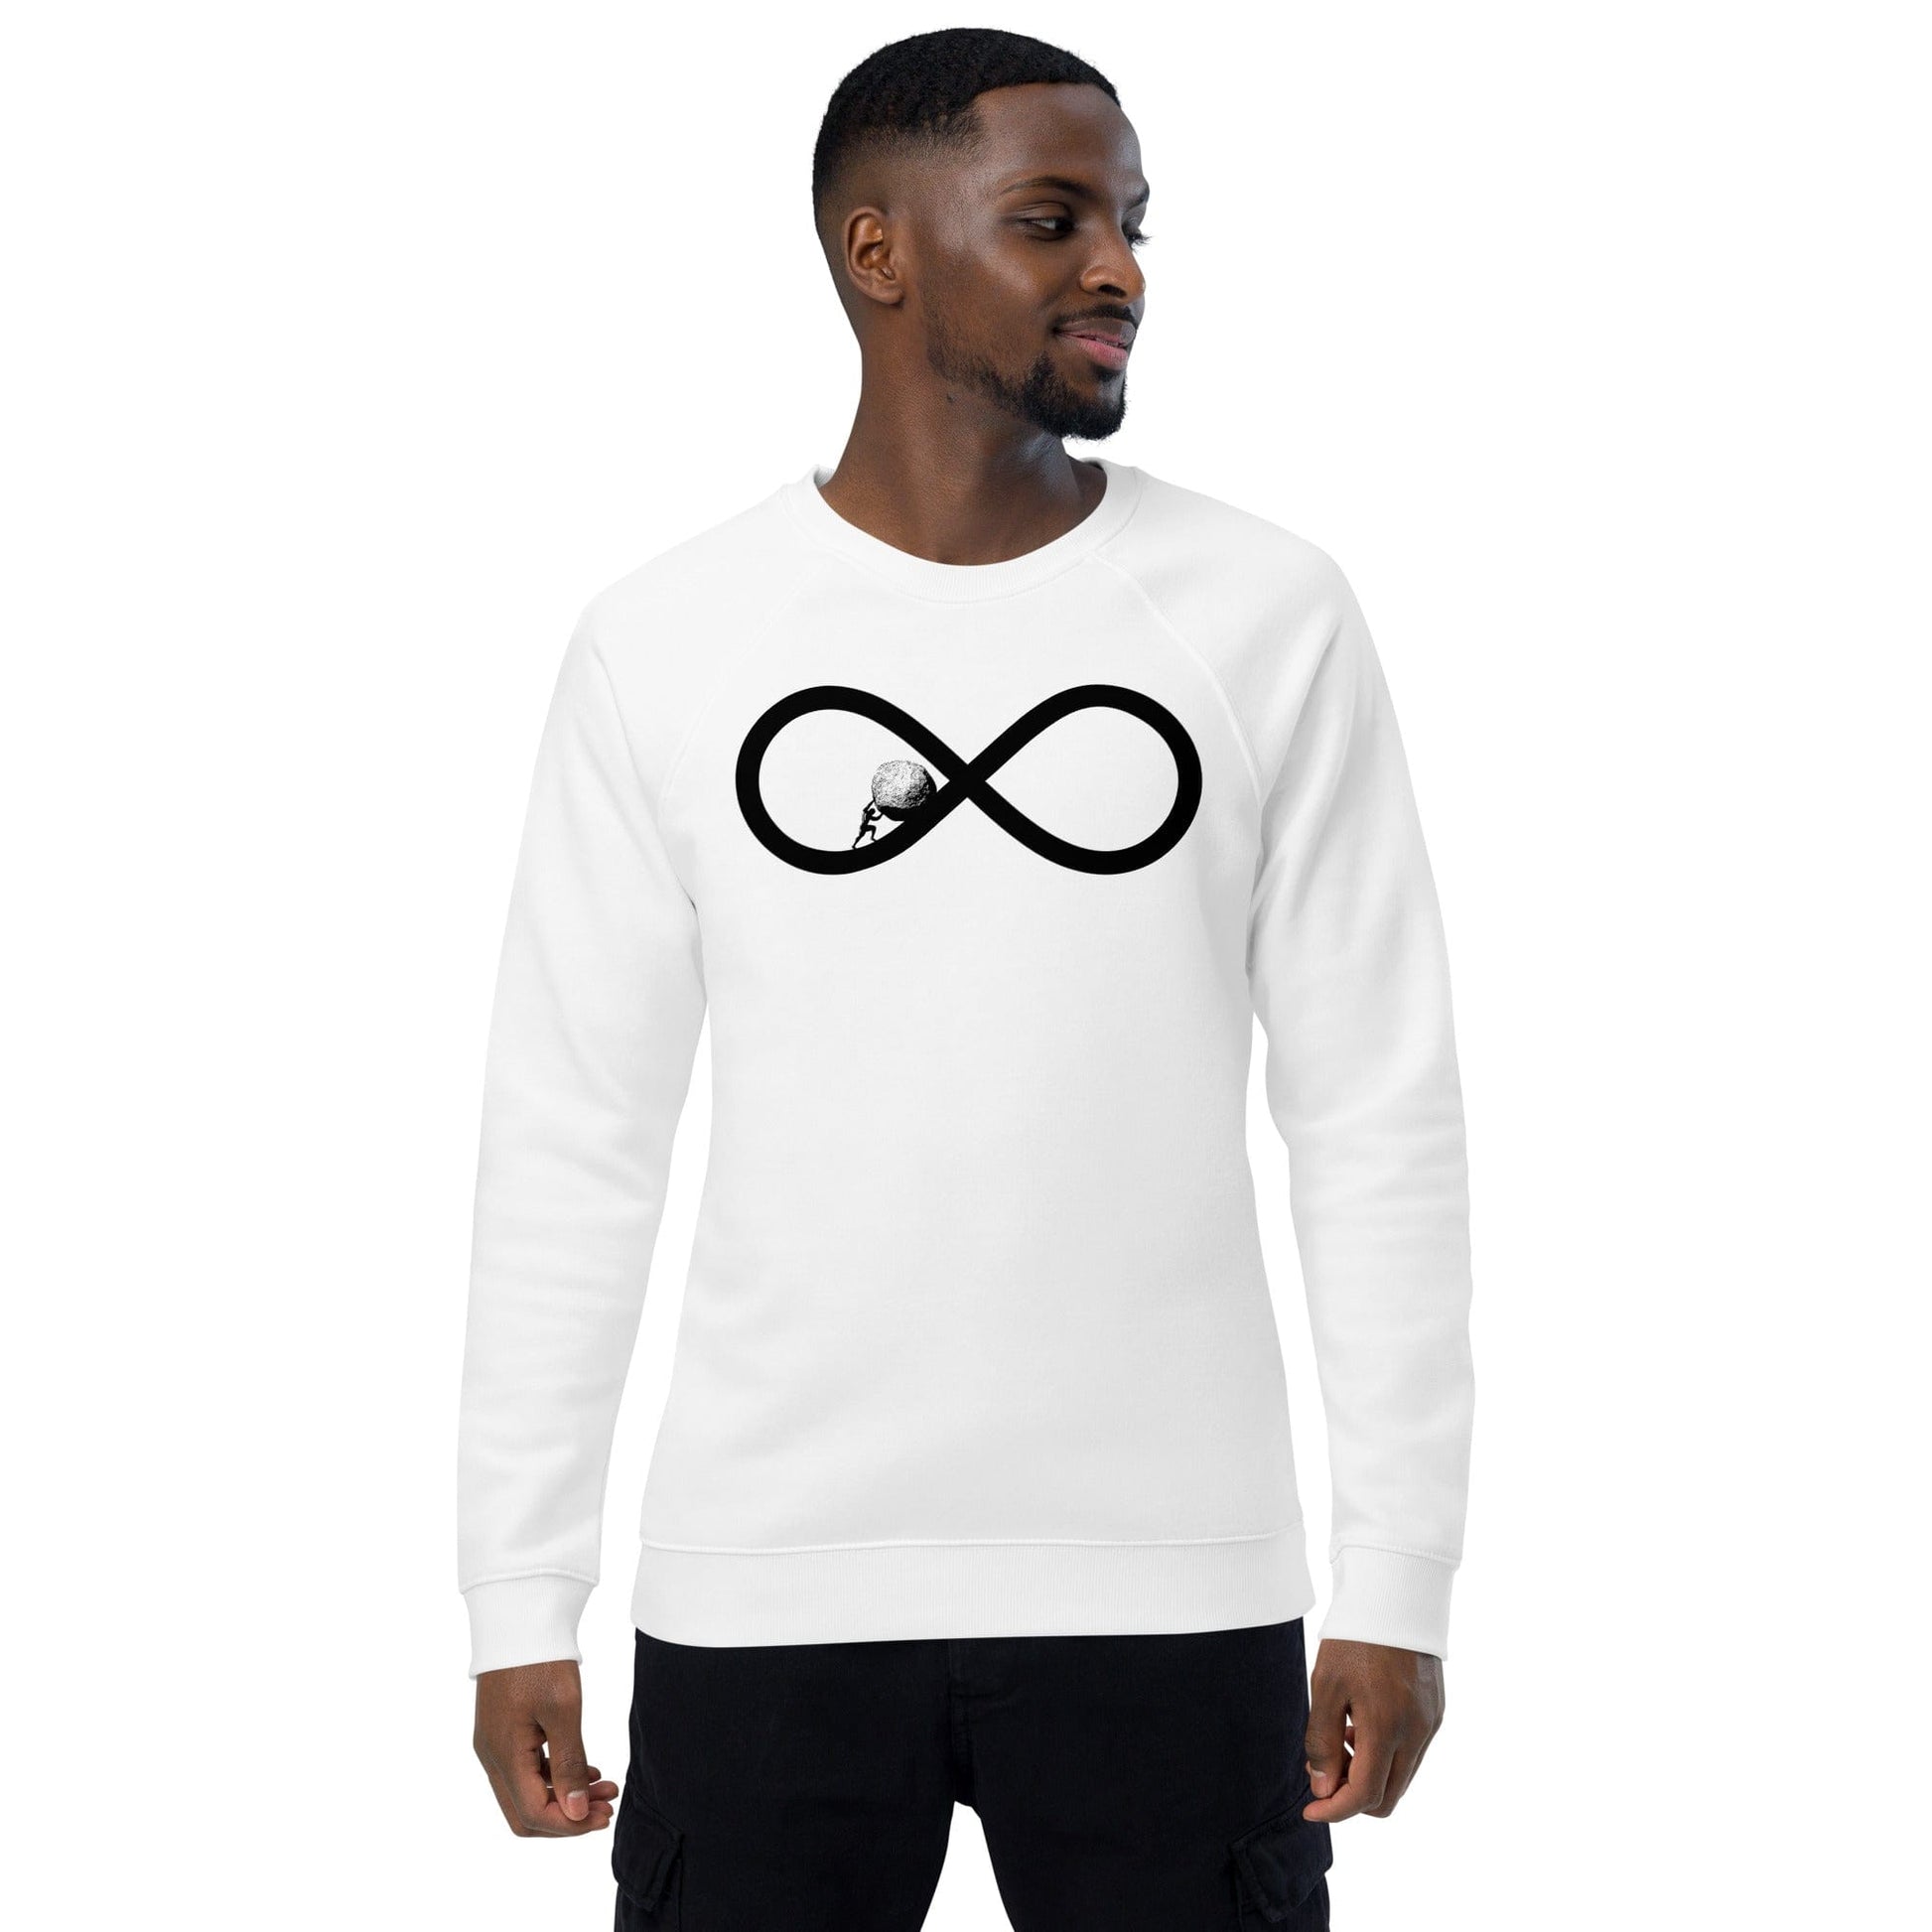 Sisyphus To Infinity - Eco Sweatshirt